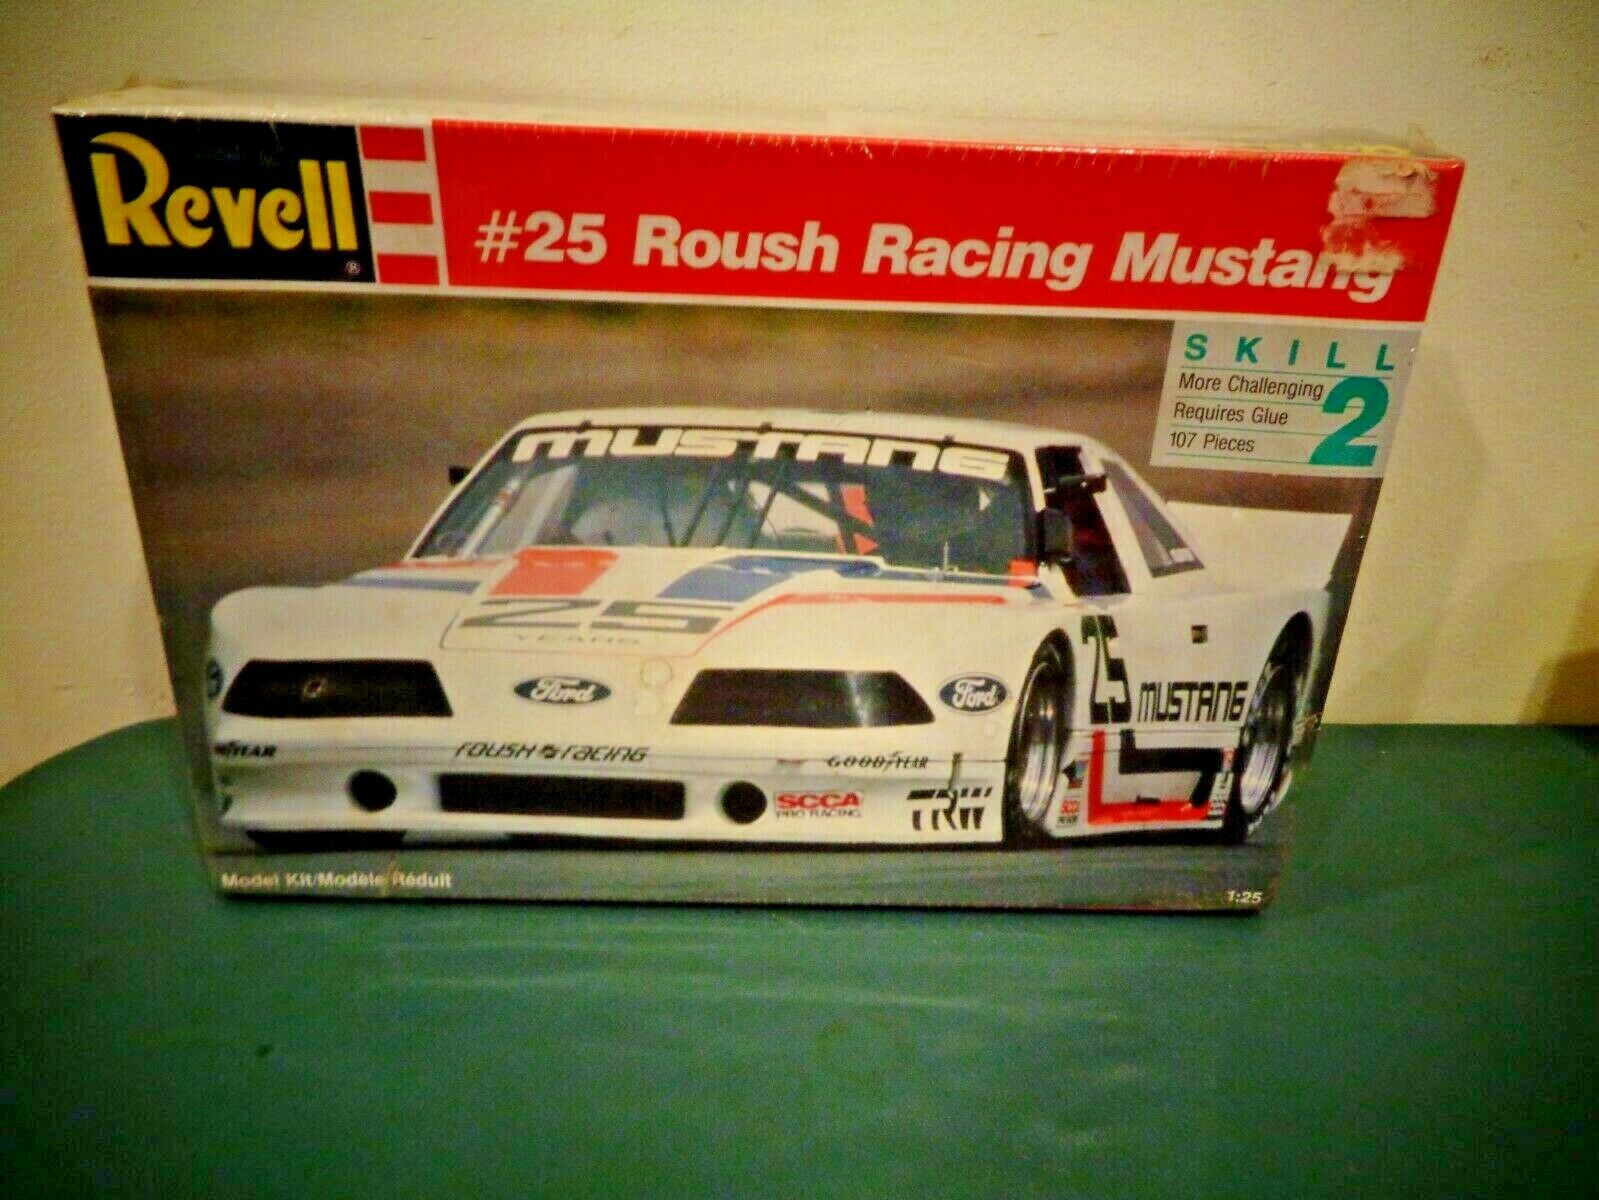 Revell Model 7195 #25 Roush Racing Mustang 1989 Scca Series Champ Kit Sealed